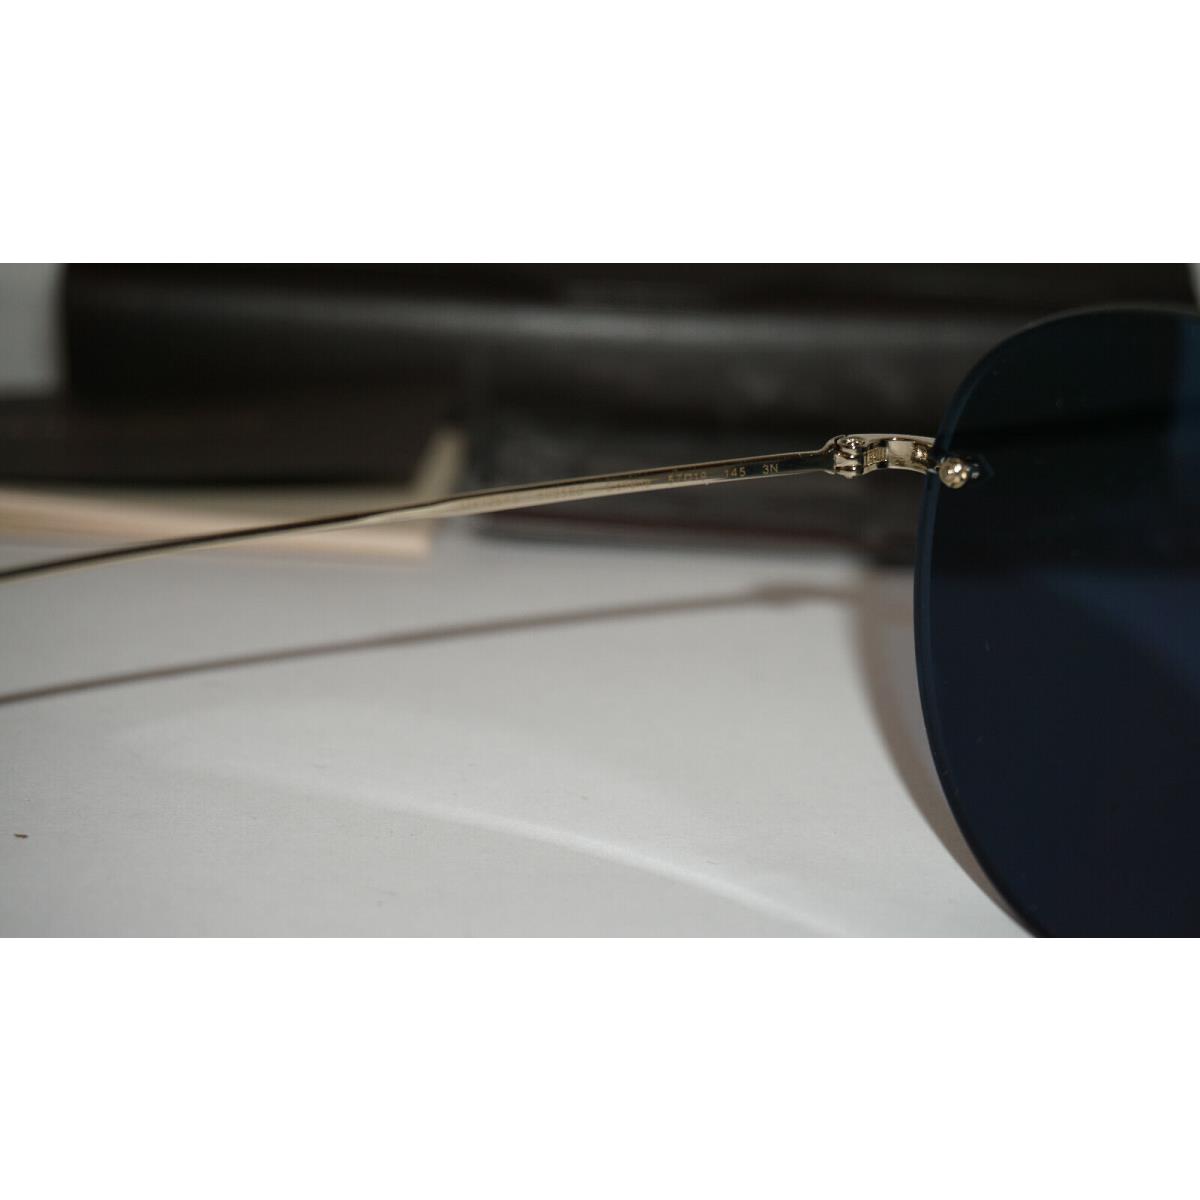 Oliver Peoples sunglasses  - Soft Gold Frame, Blue Lens 7